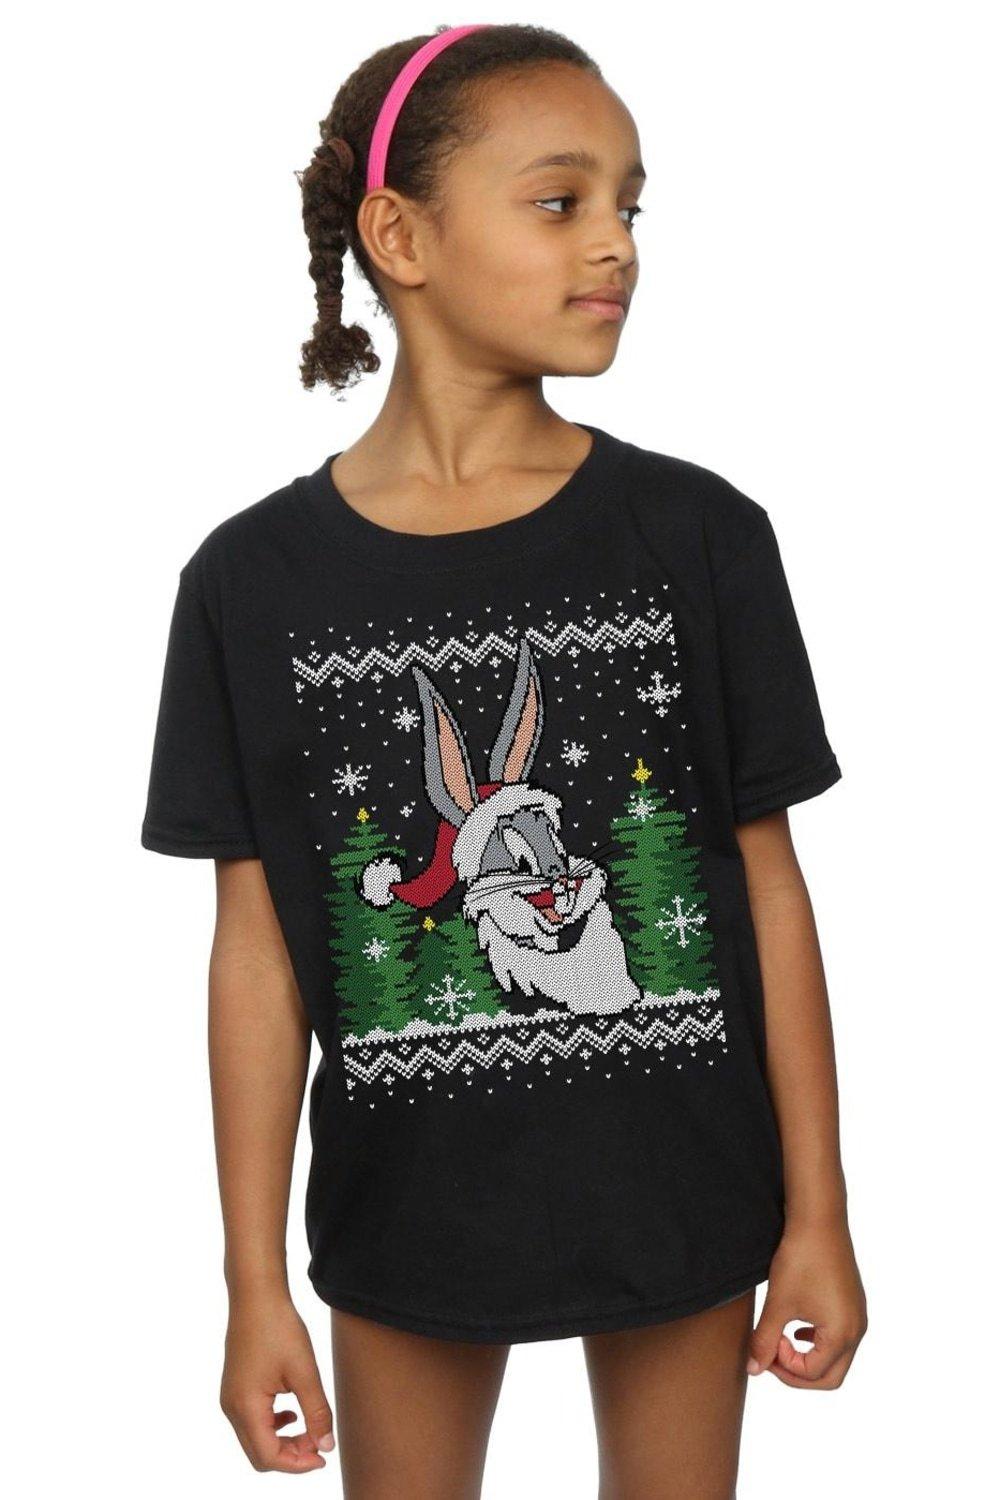 Bugs Bunny Christmas Fair Isle Cotton T-Shirt